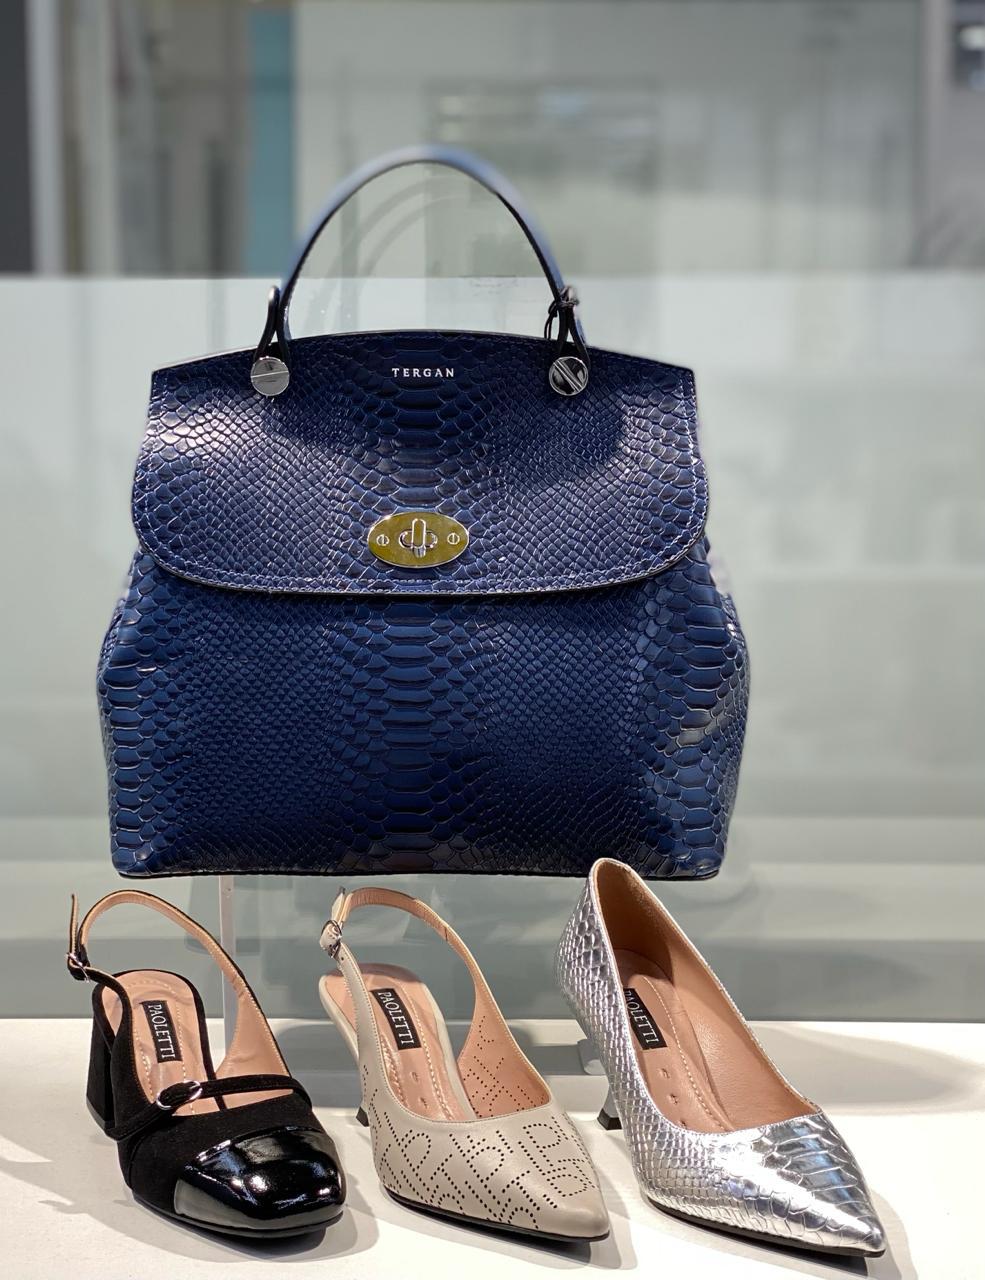 Модная женская сумочка синего цвета "Tergan".